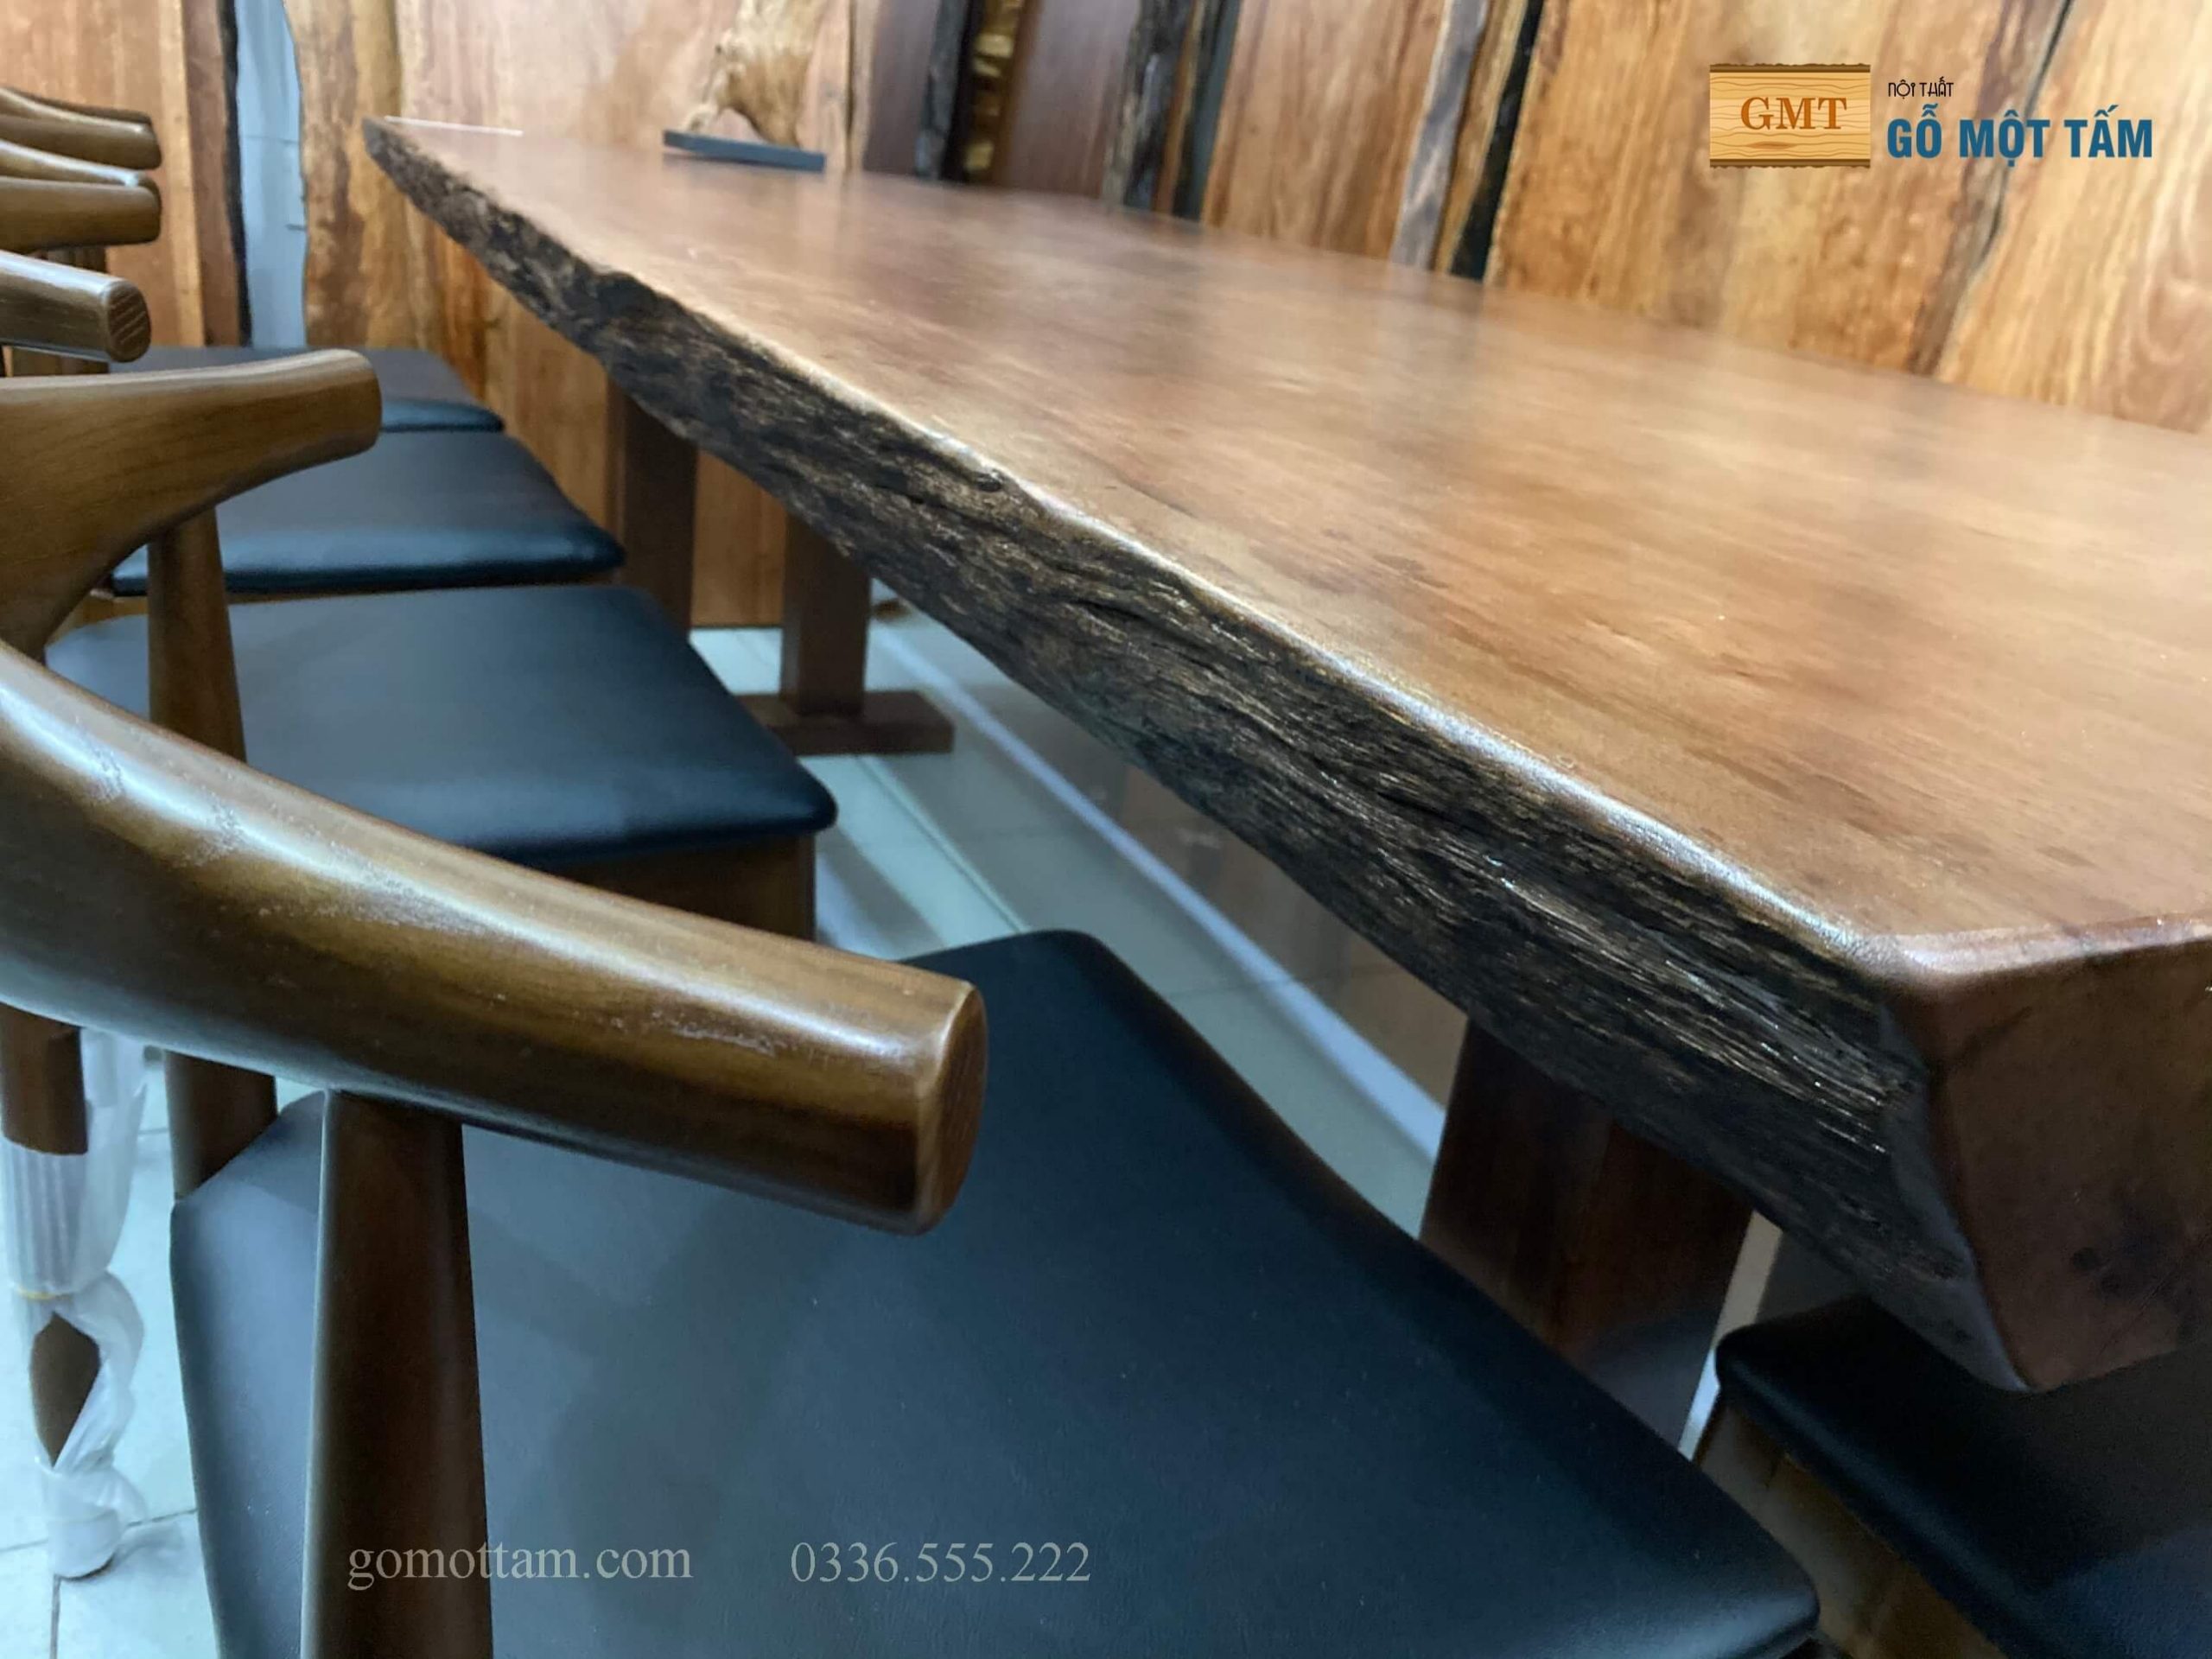 Mặt bàn gỗ nguyên tấm làm bàn làm việc dài 2m | Shopee Việt Nam